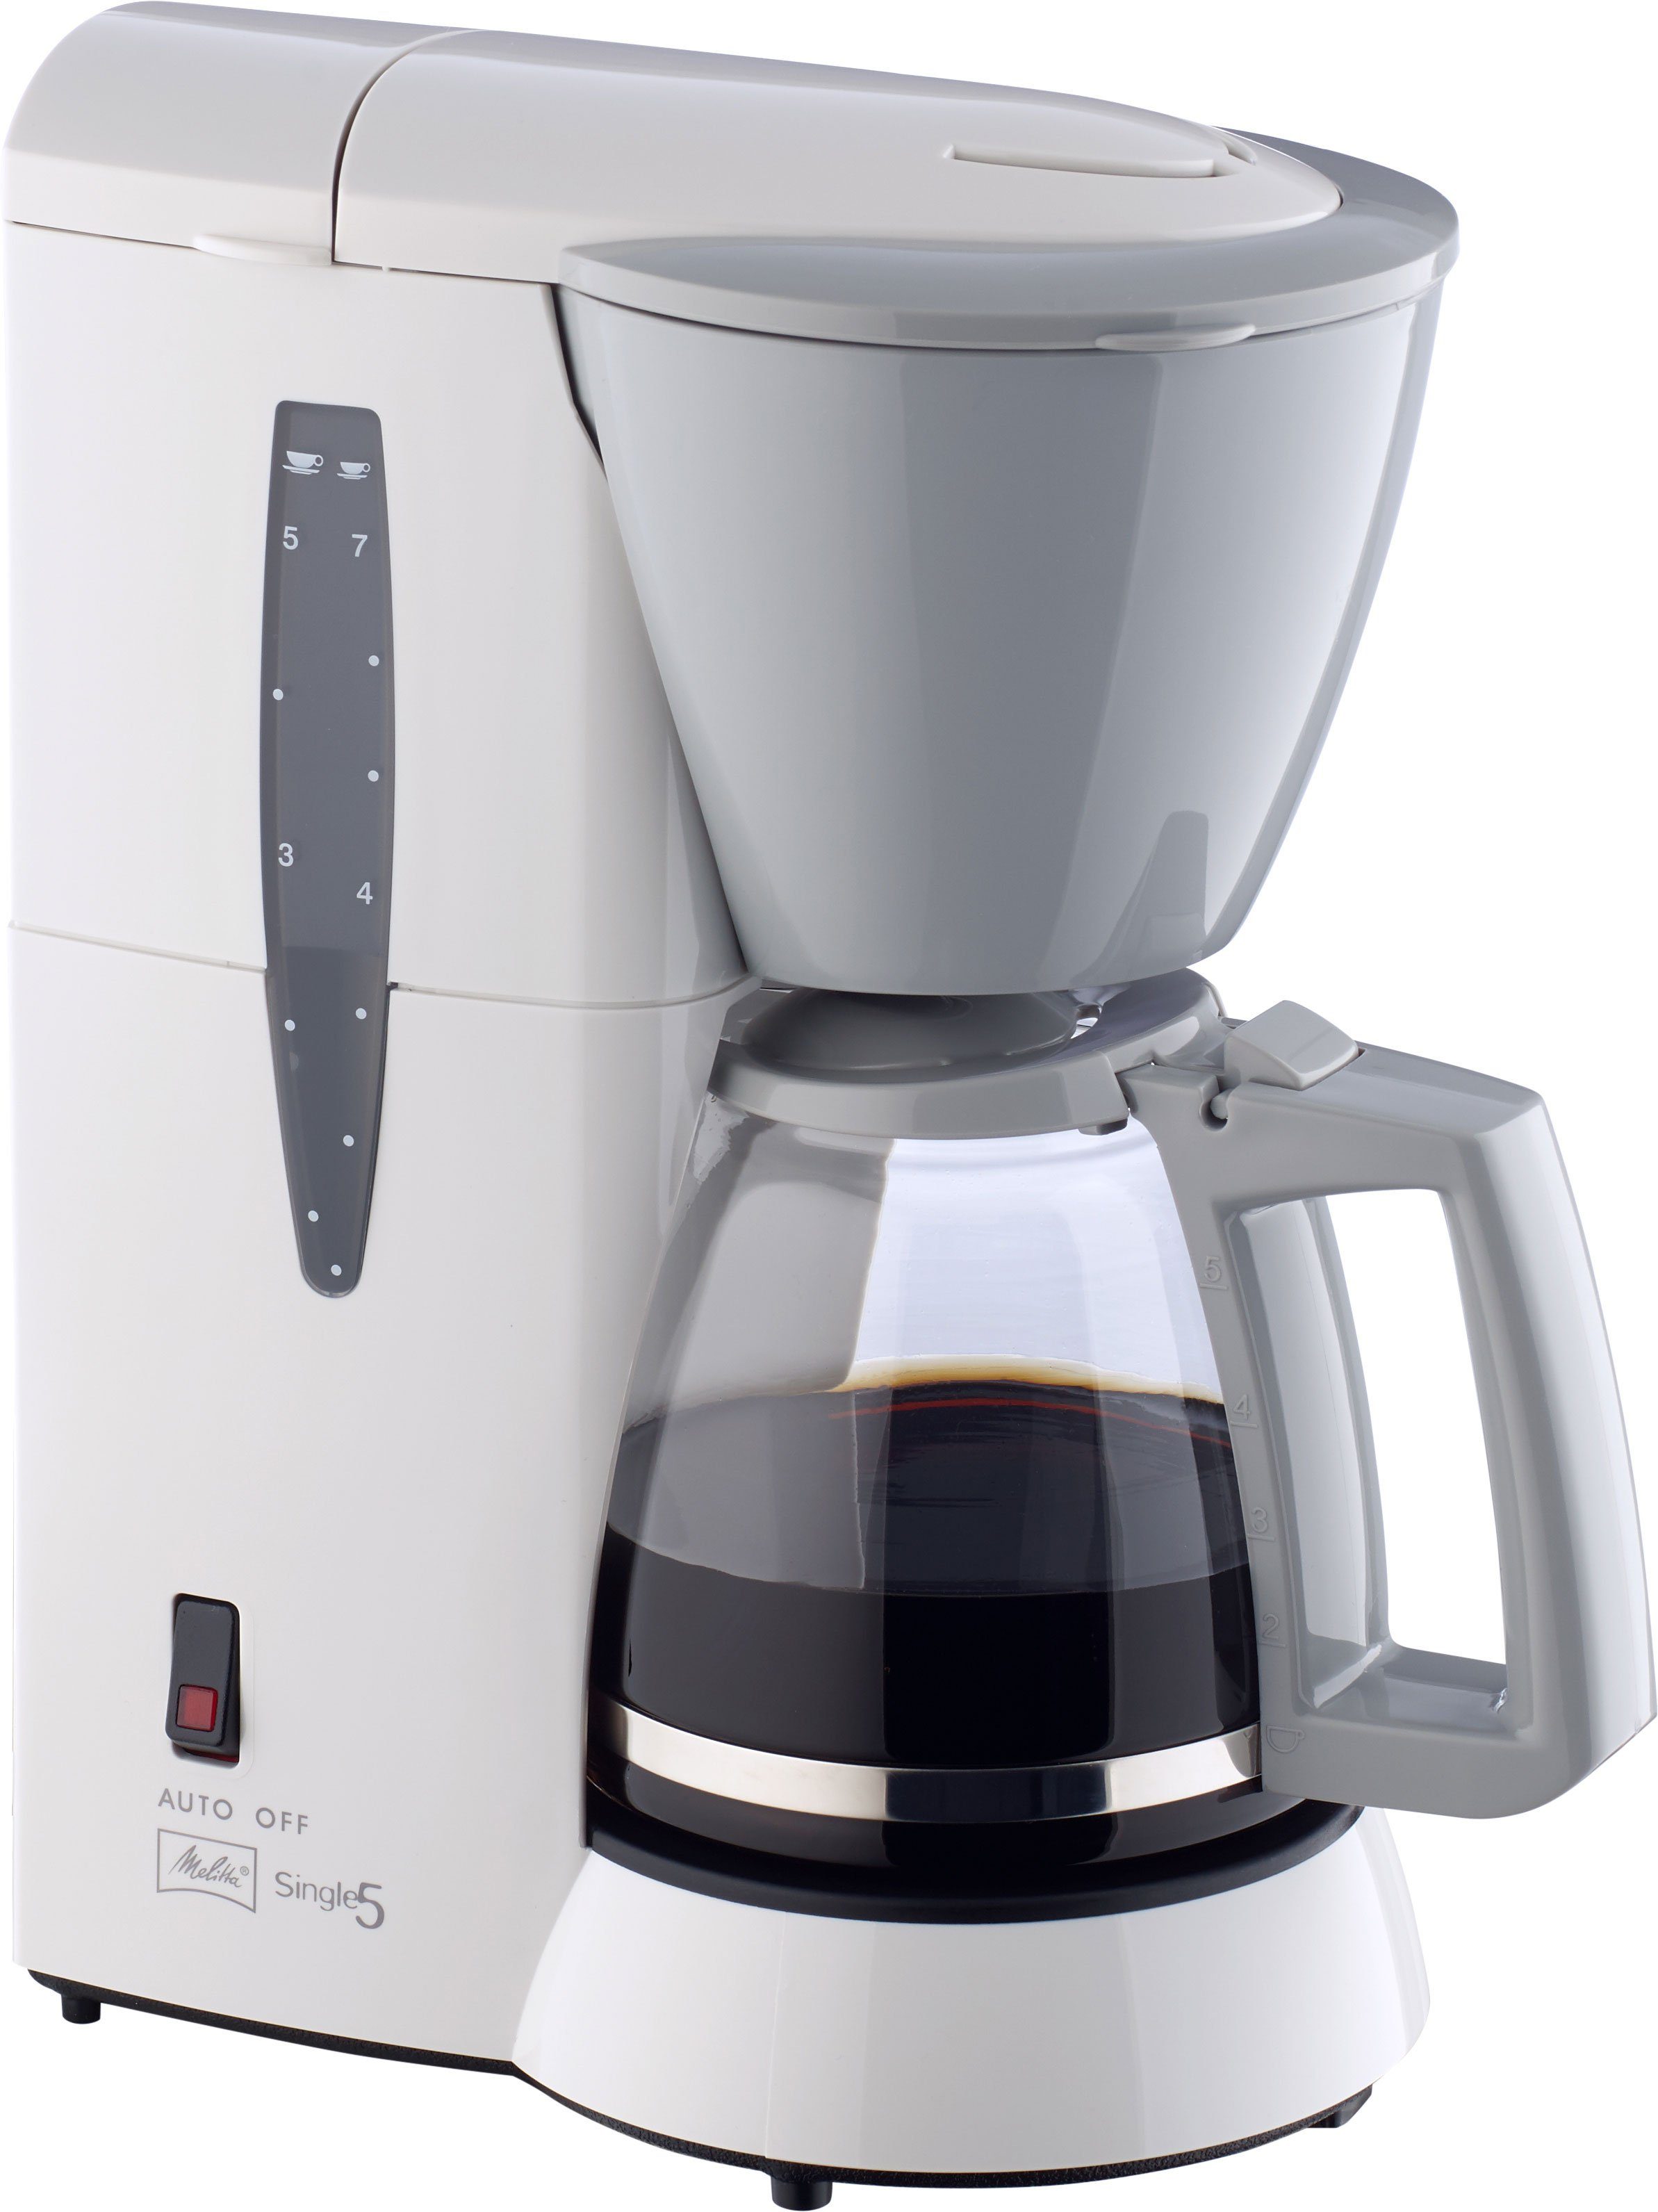 Melitta Filterkaffeemaschine Single 5 M 720 5 Tassen kompakt, 0.65l Kaffeekanne, 1x2 weiß